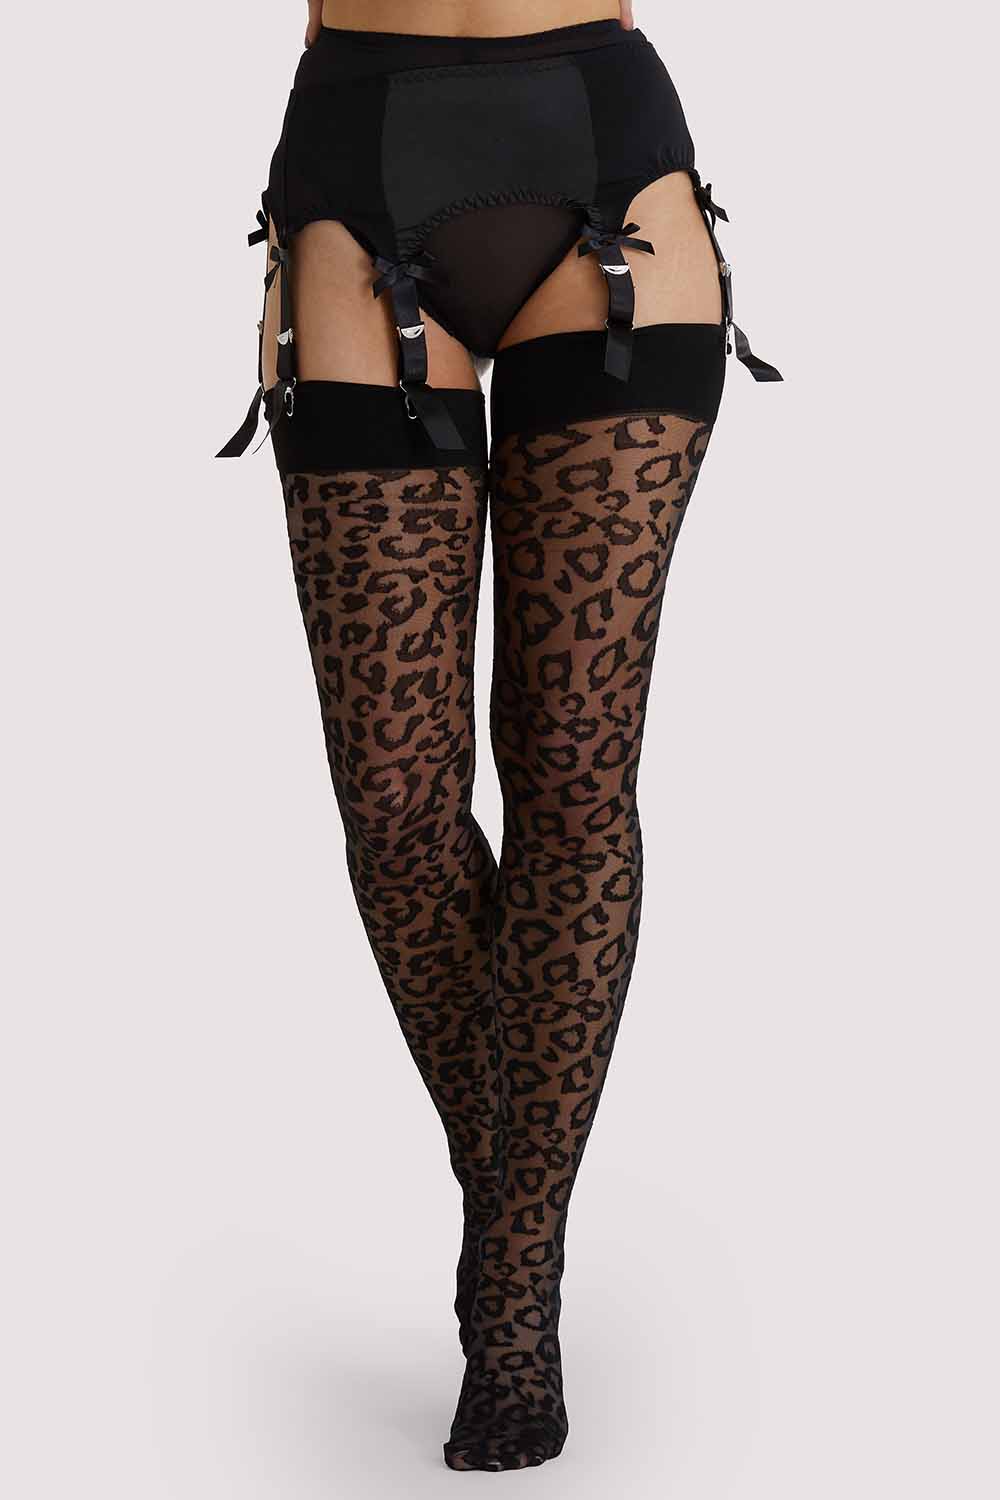 Leopard Knit Stockings - Black/Black US 4 - 18 Tall